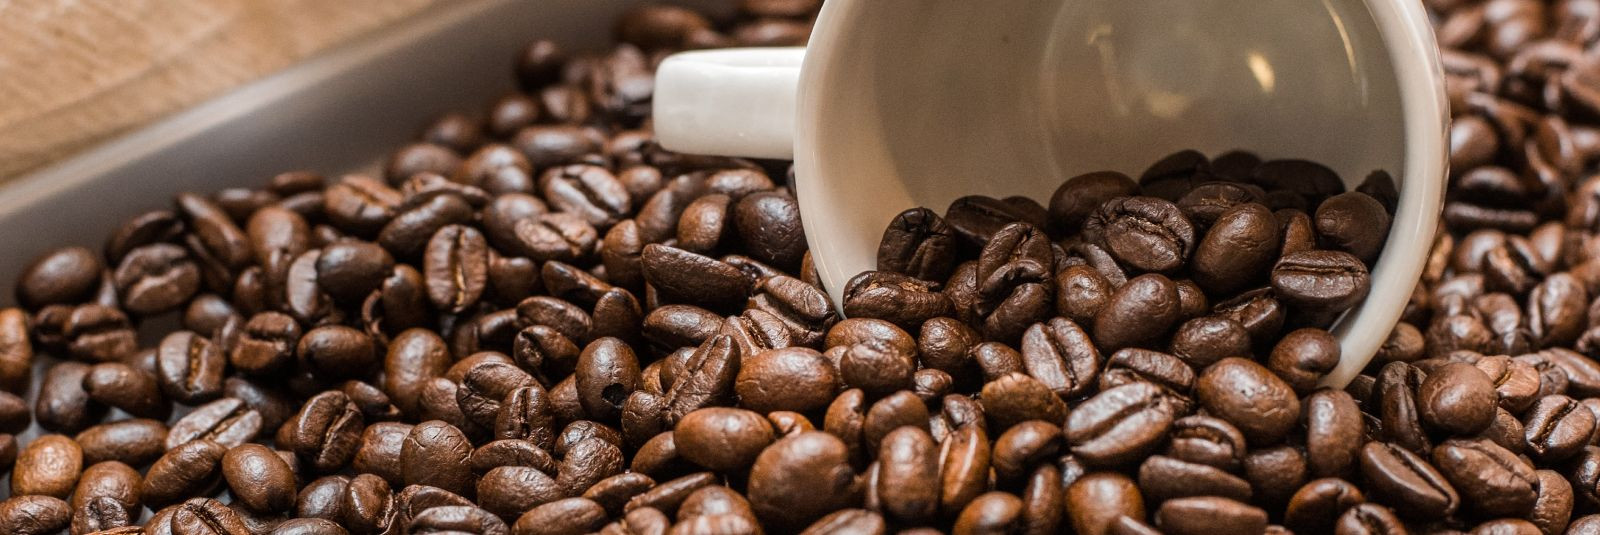 Kui otsid parimat kohvi, siis Parim Kohvipood on ideaalne koht sinu jaoks. Pakume suurepärast valikut erinevaid kohviube, jahvatatud kohvi, teed ja hooldustarvi